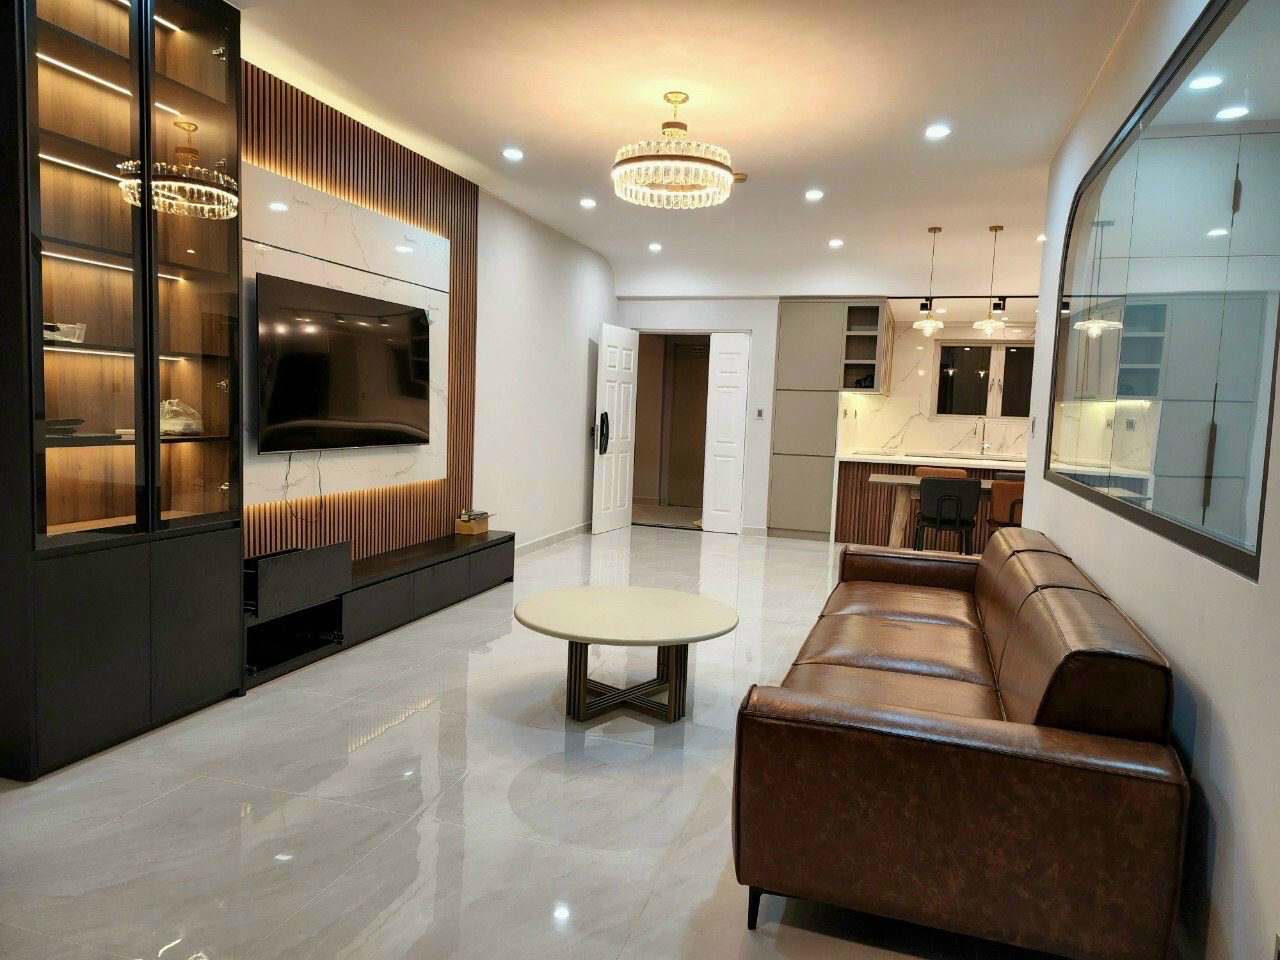 Cần cho thuê căn hộ Hoàng Anh Gia Lai 3, nhà đẹp, giá siêu rẻ. LH: 0914.574.528 (Em Thao)